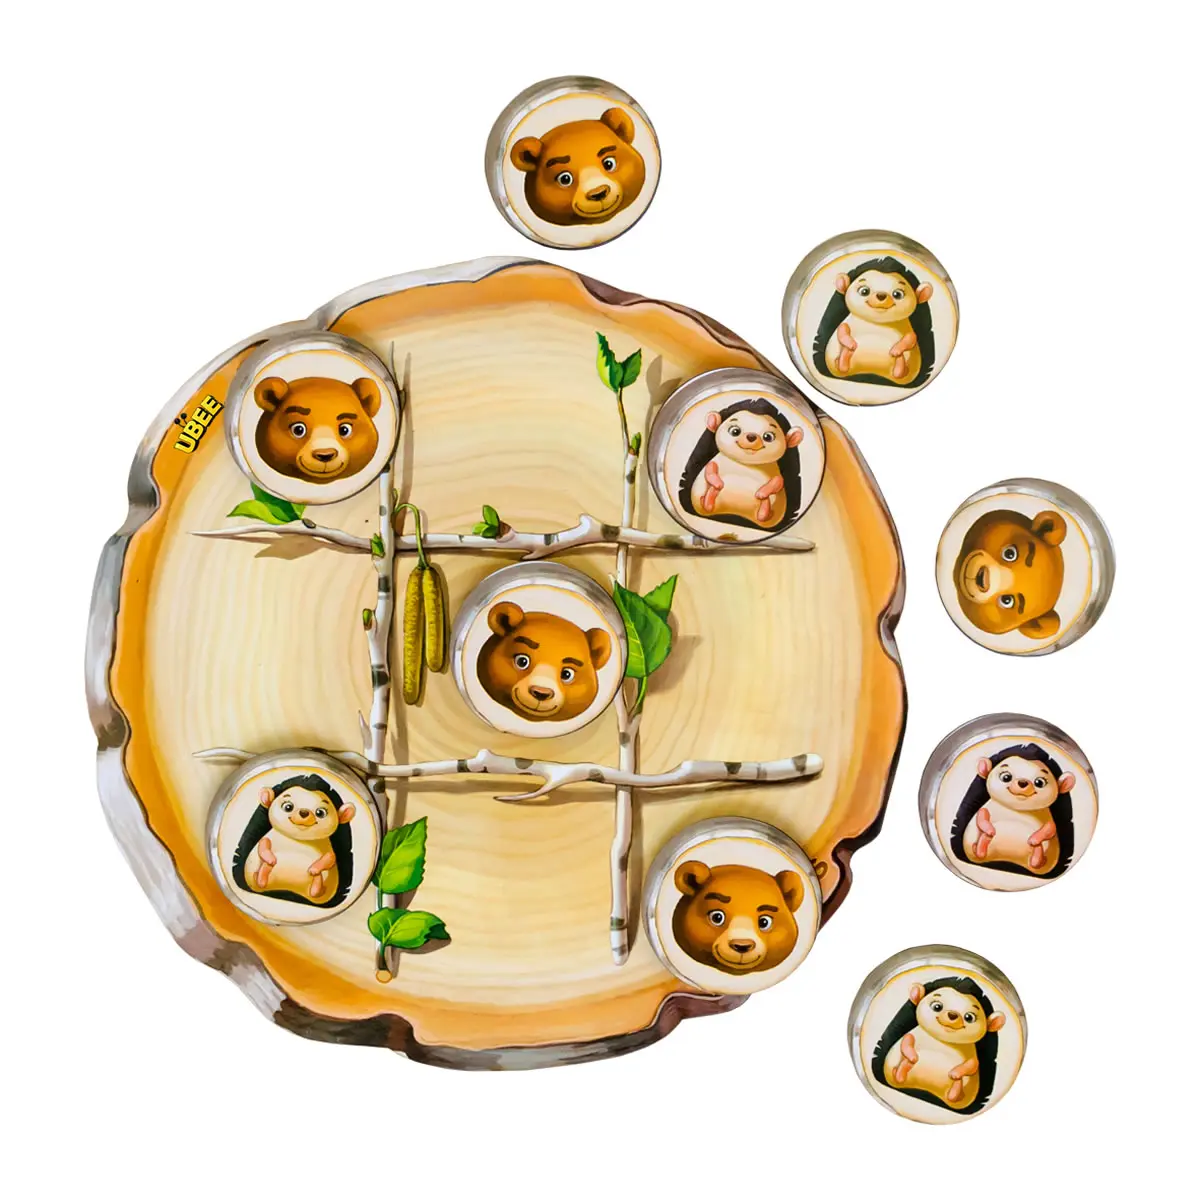 Drewniana gra Kółko-krzyżyk: jeżaczek i niedźwiadek»